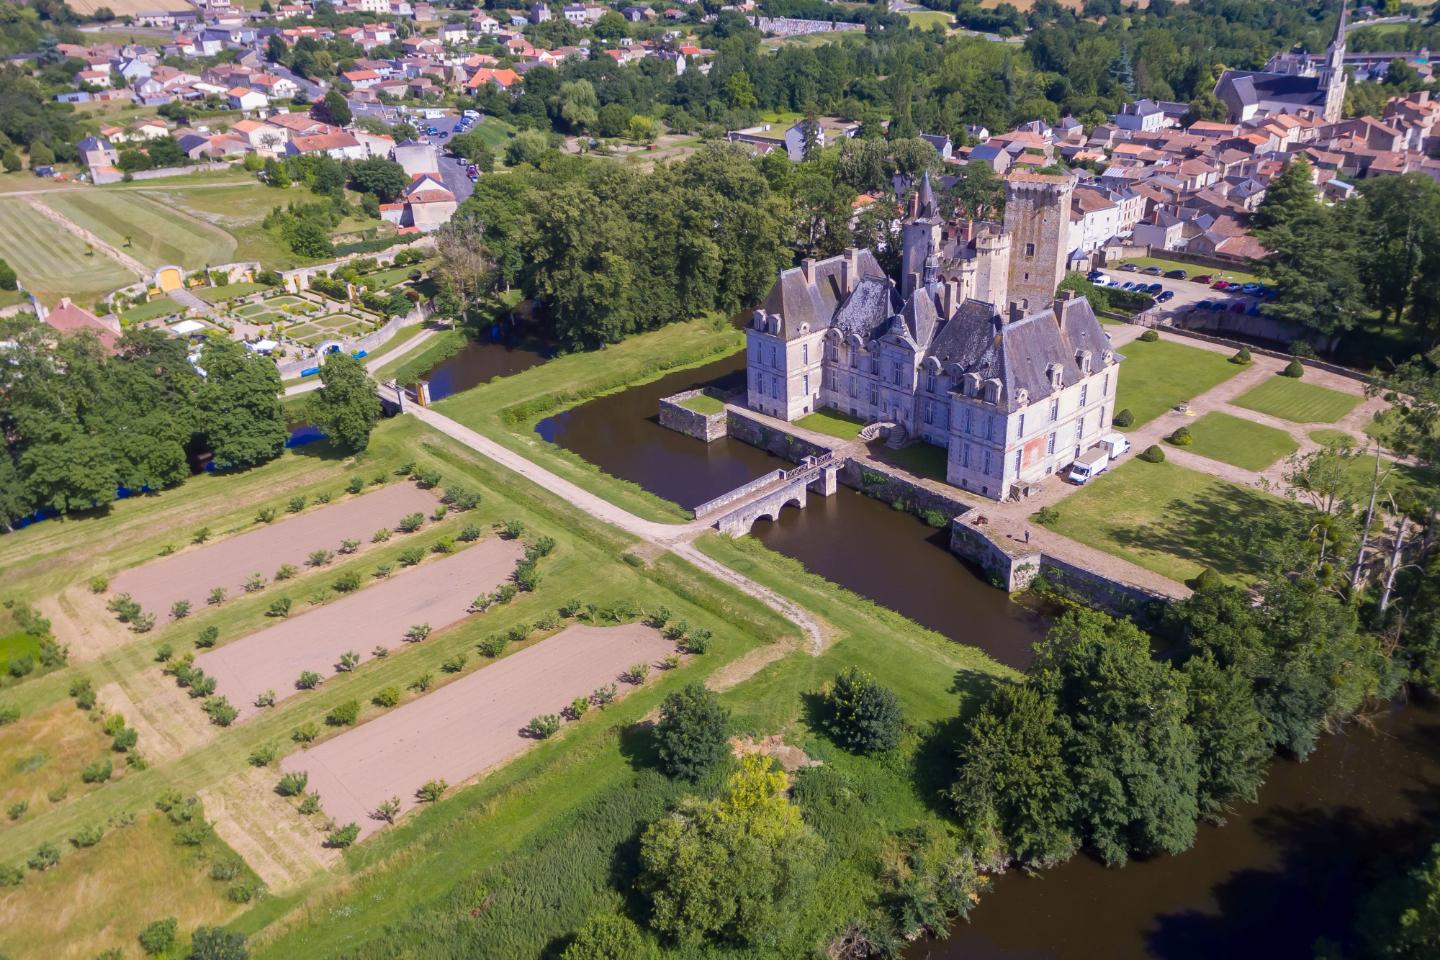 Logement GreenGo: Château de Saint-Loup sur Thouet 79600 Site exceptionnel classé Monument historique - Incontournable - Image 3